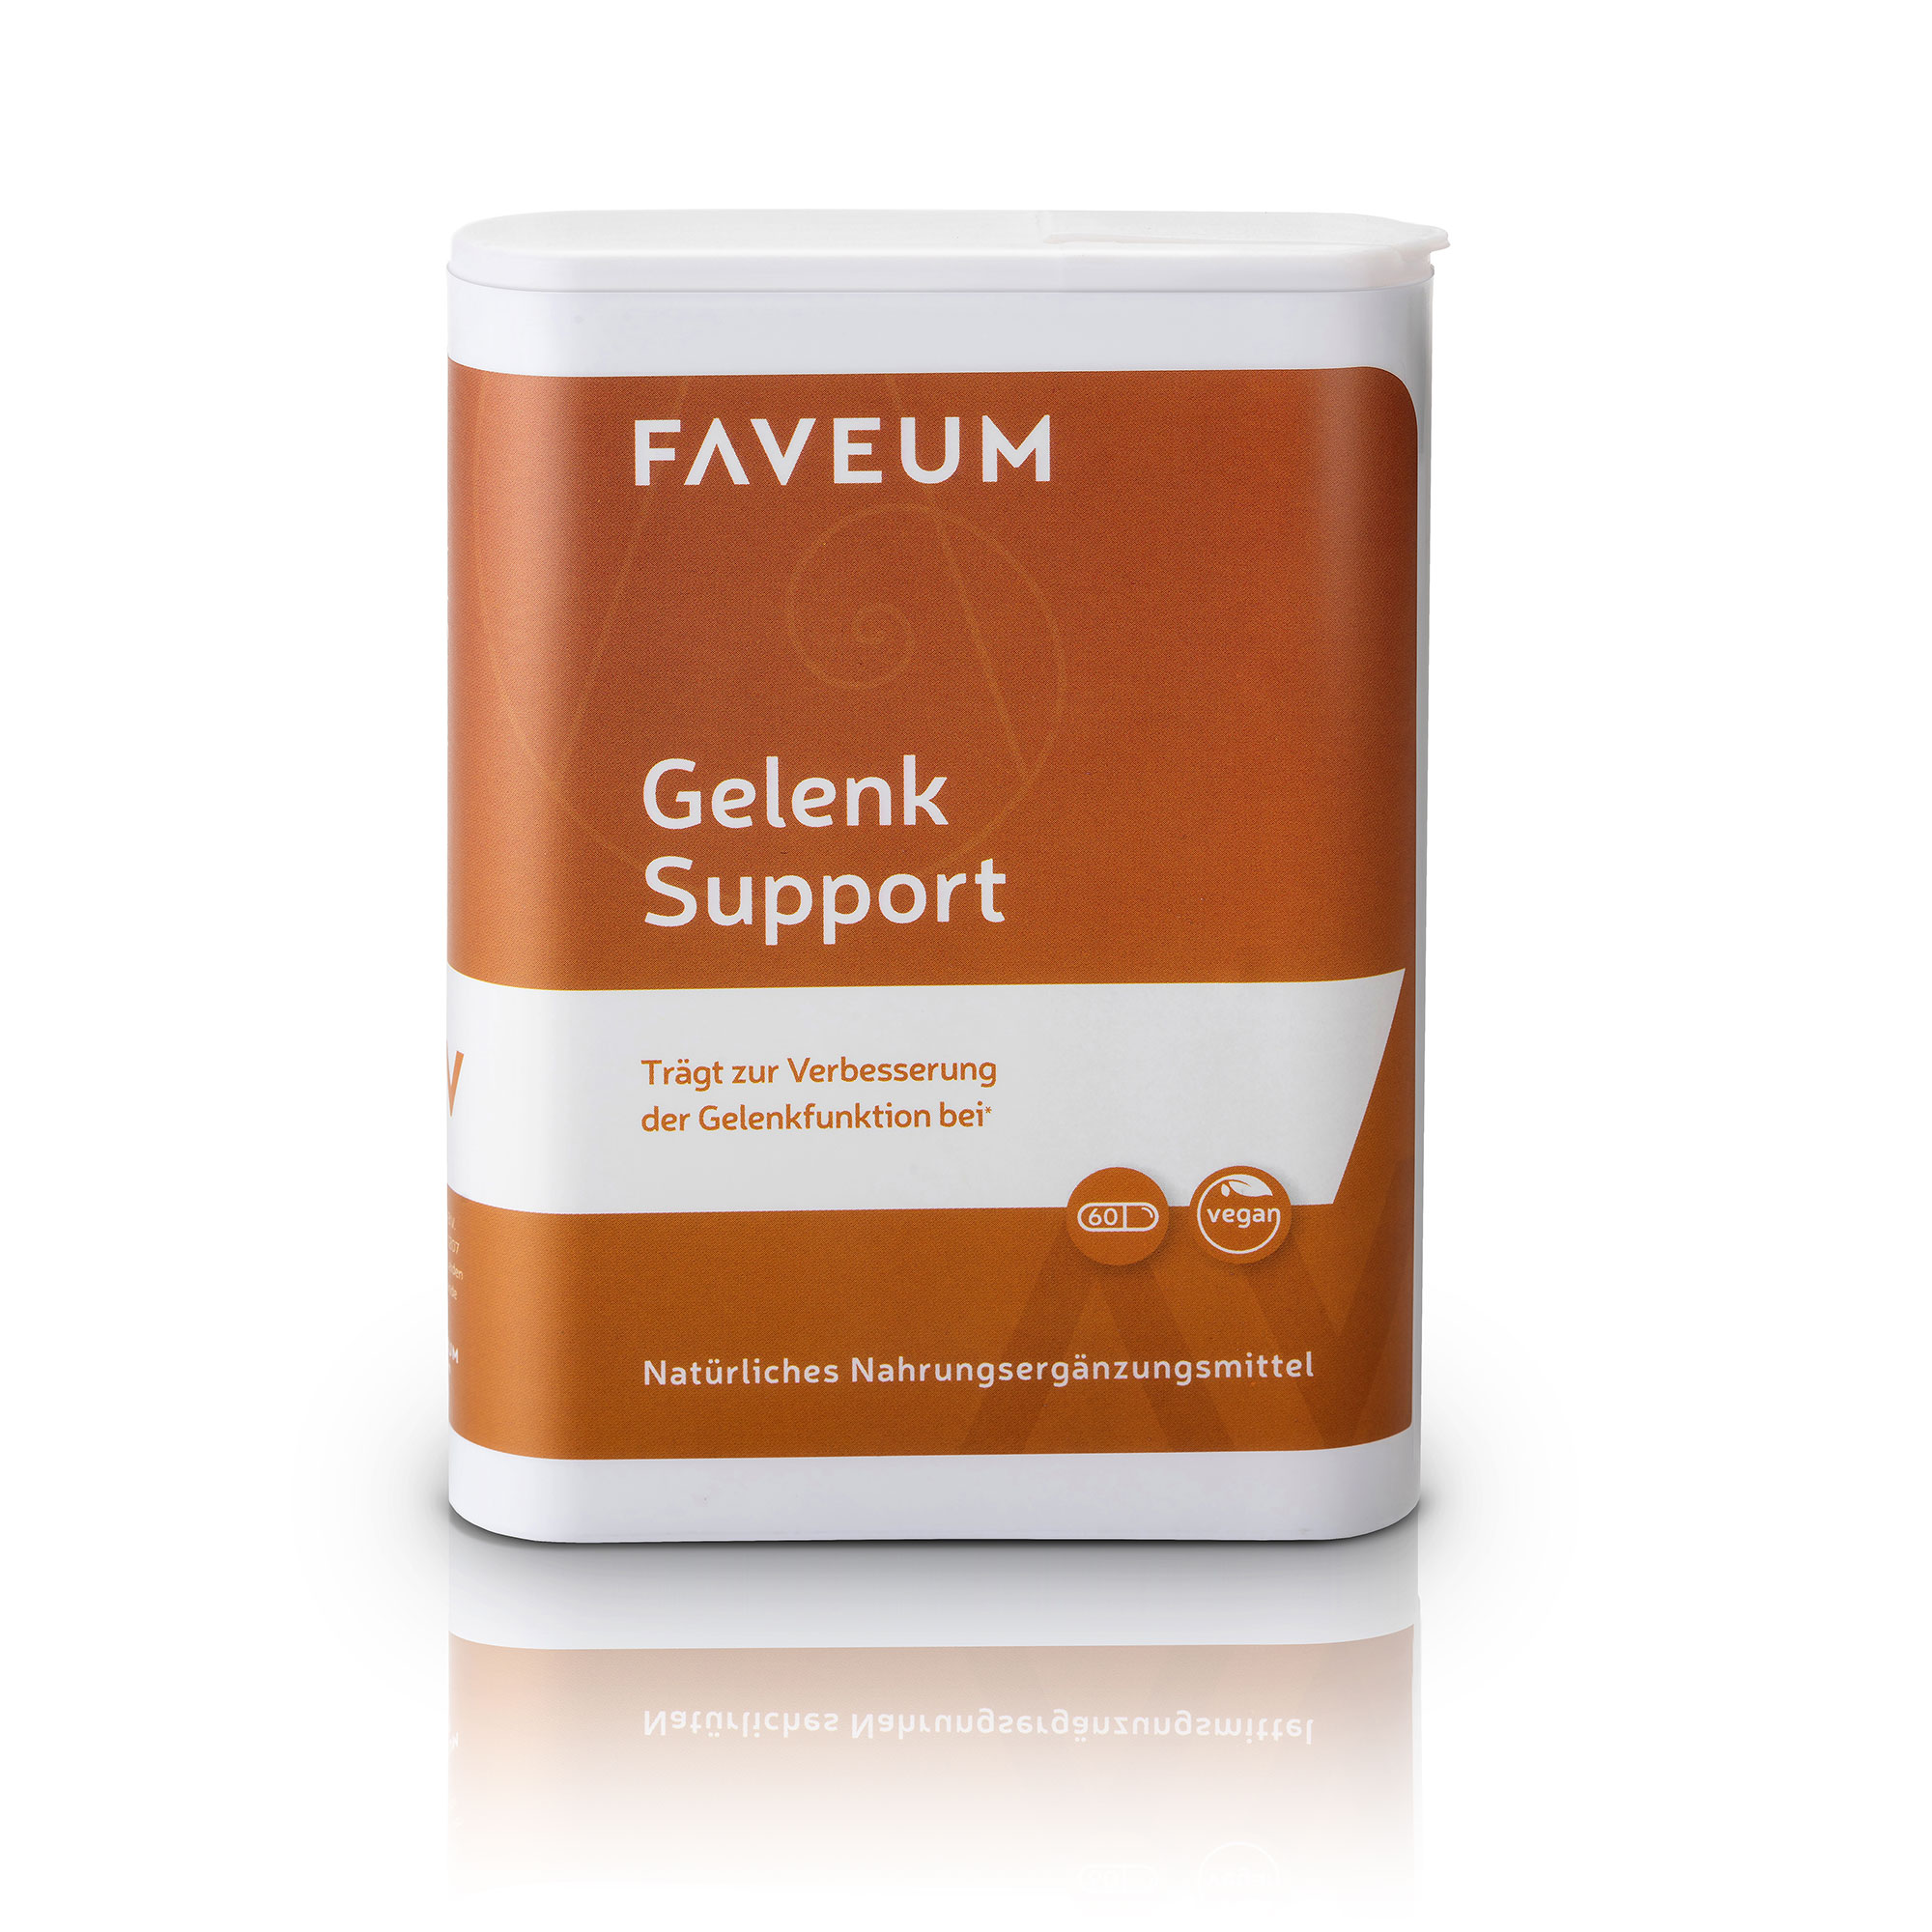 Faveum Gelenk Support